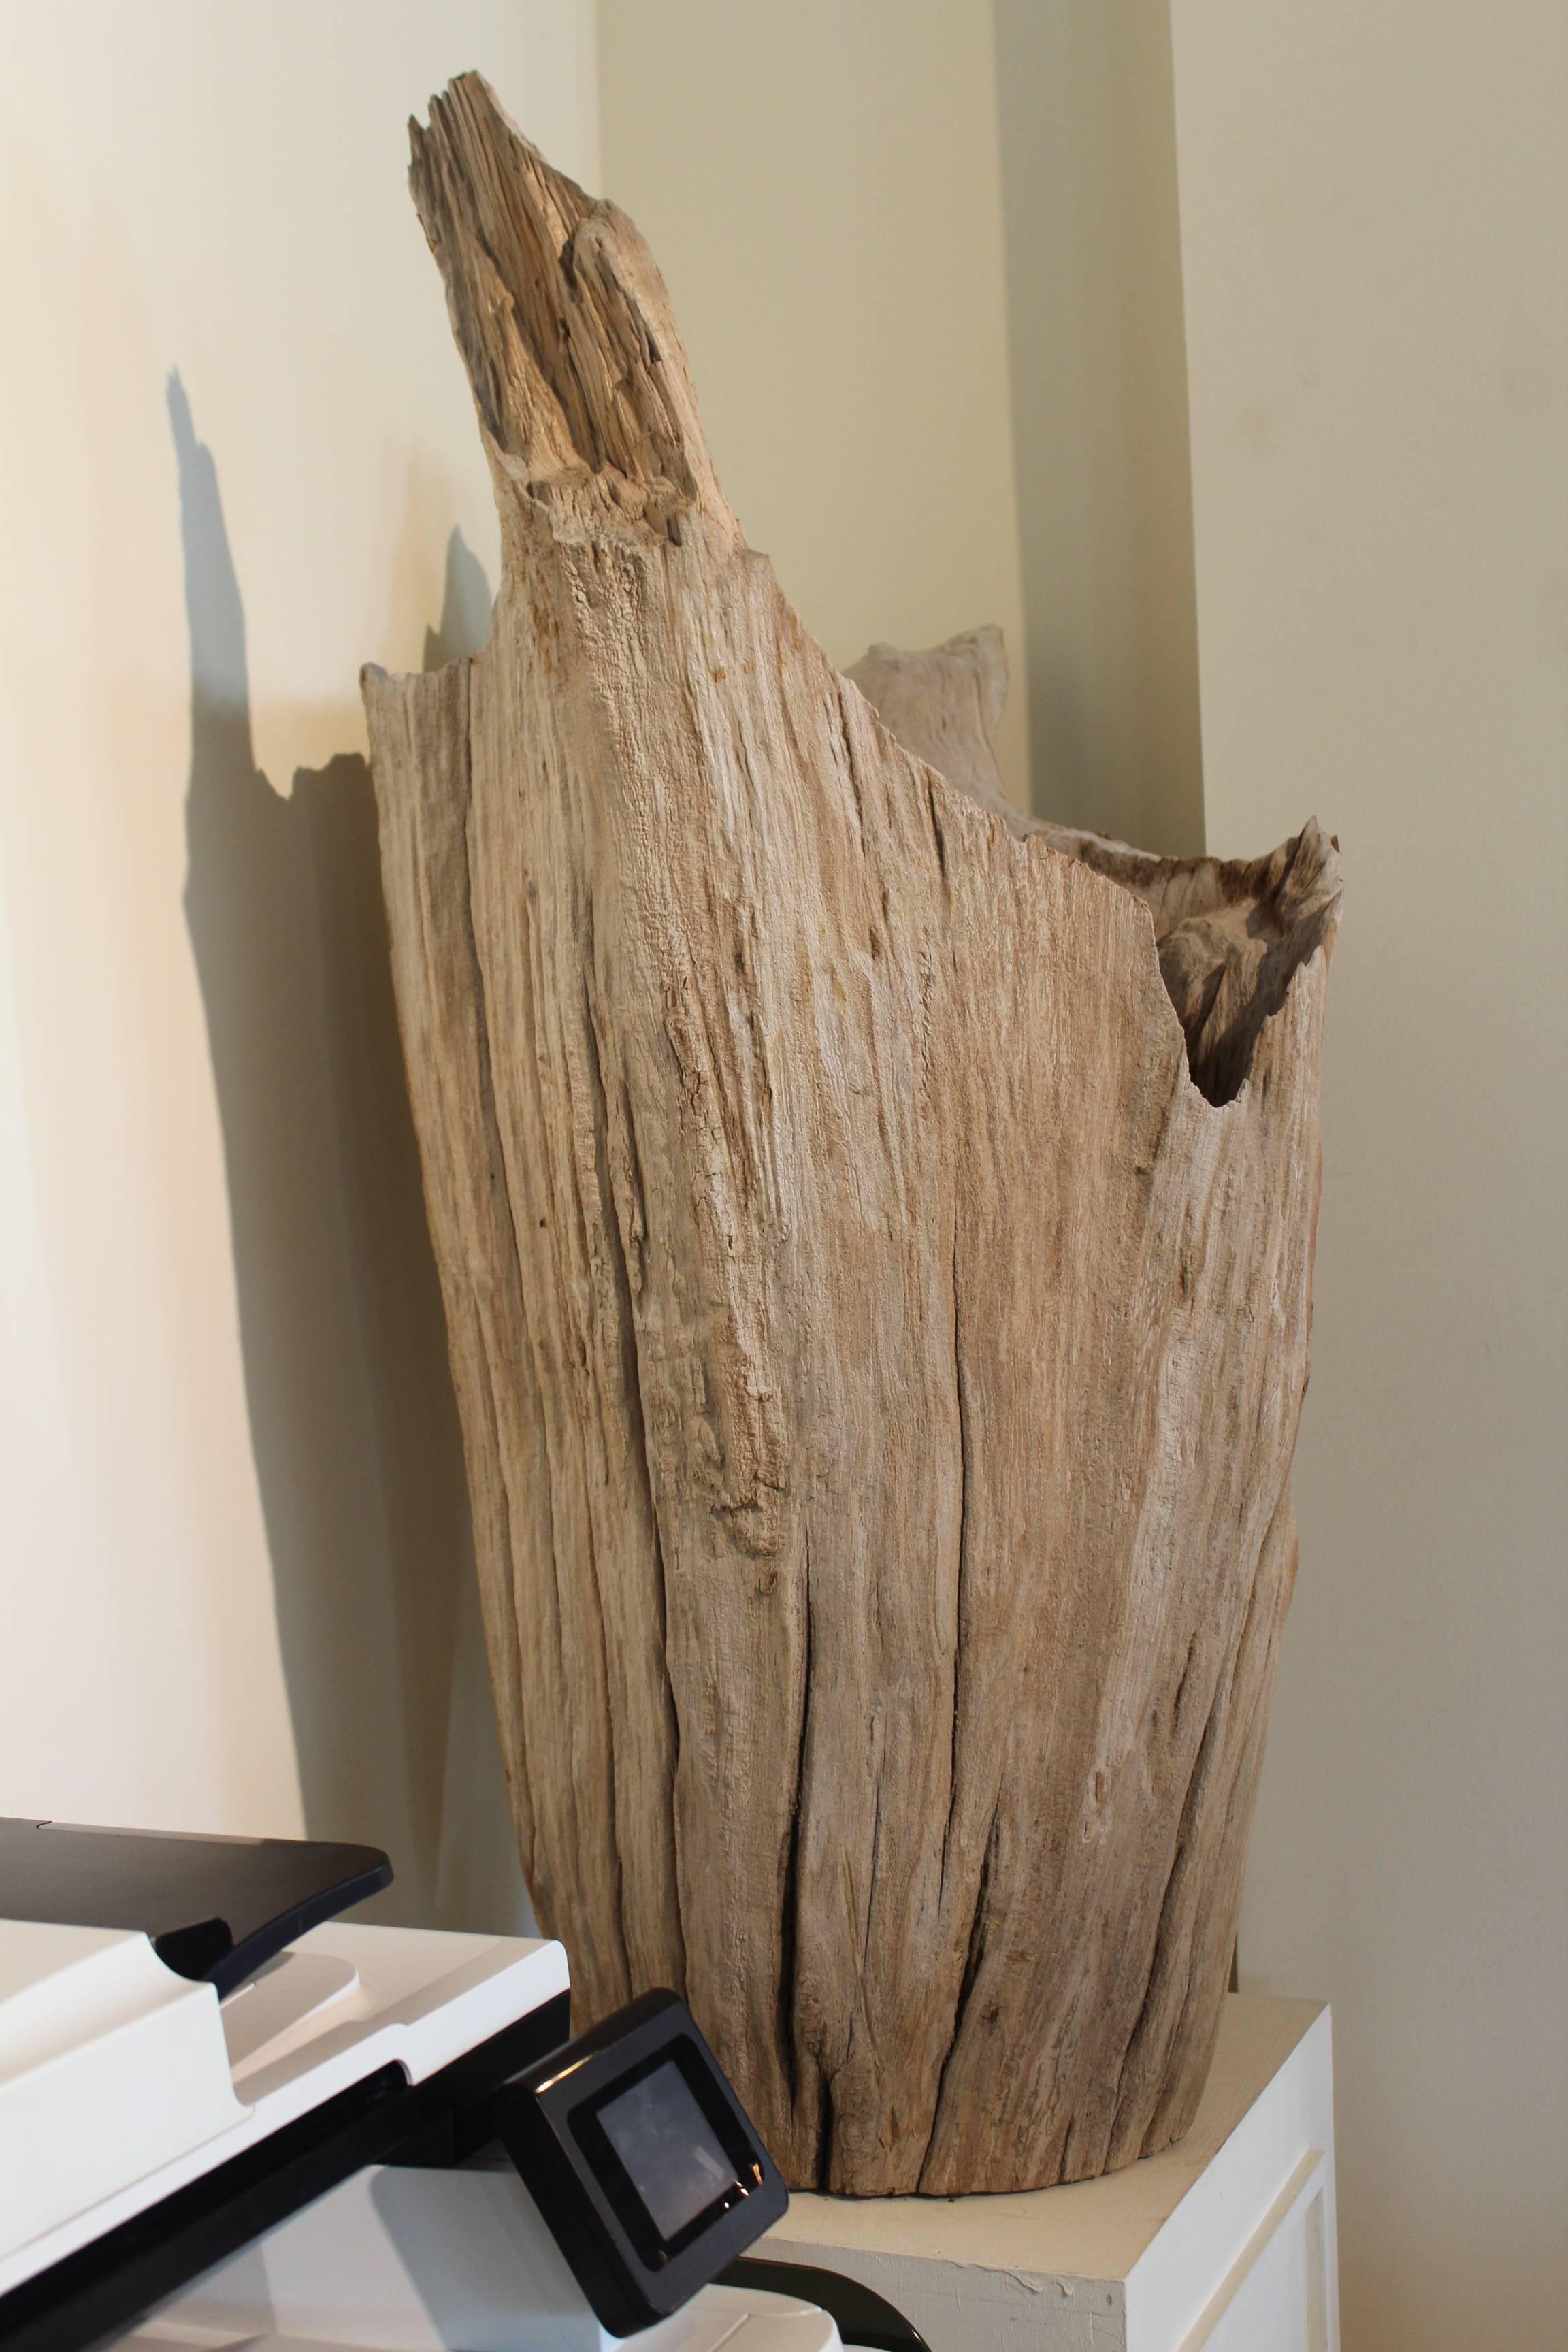 Central Asian Organic Driftwood as Sculpture